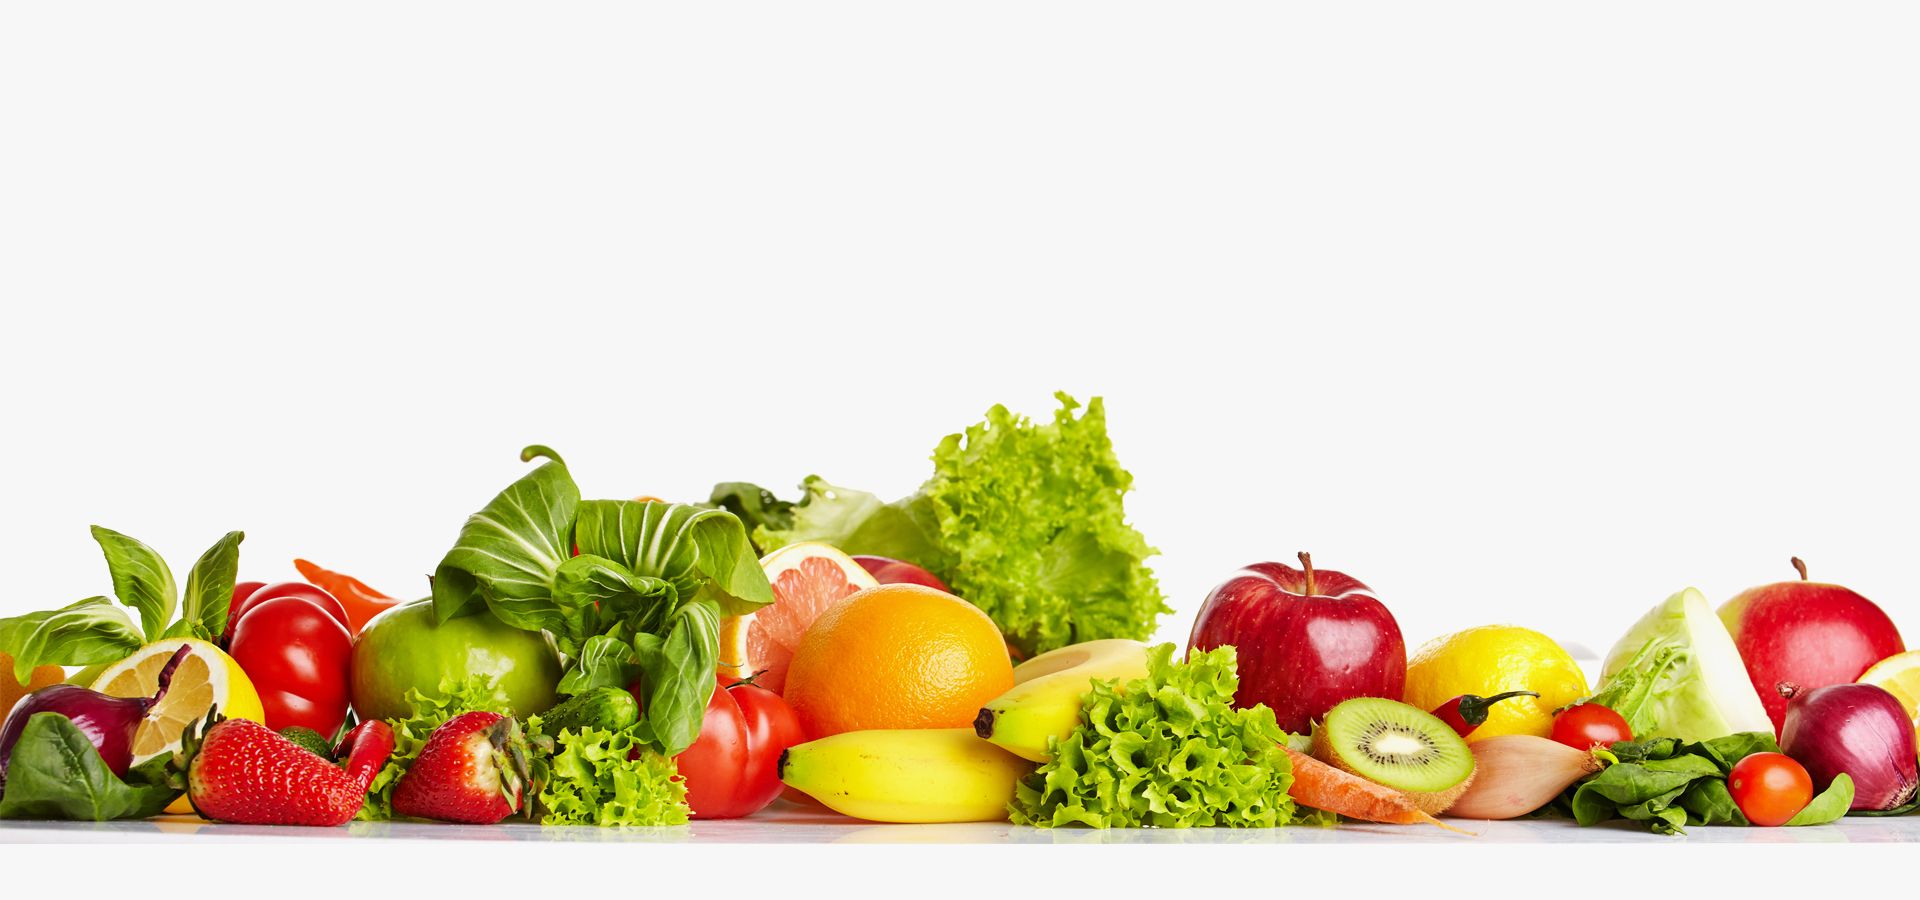 Рамка из овощей и фруктов